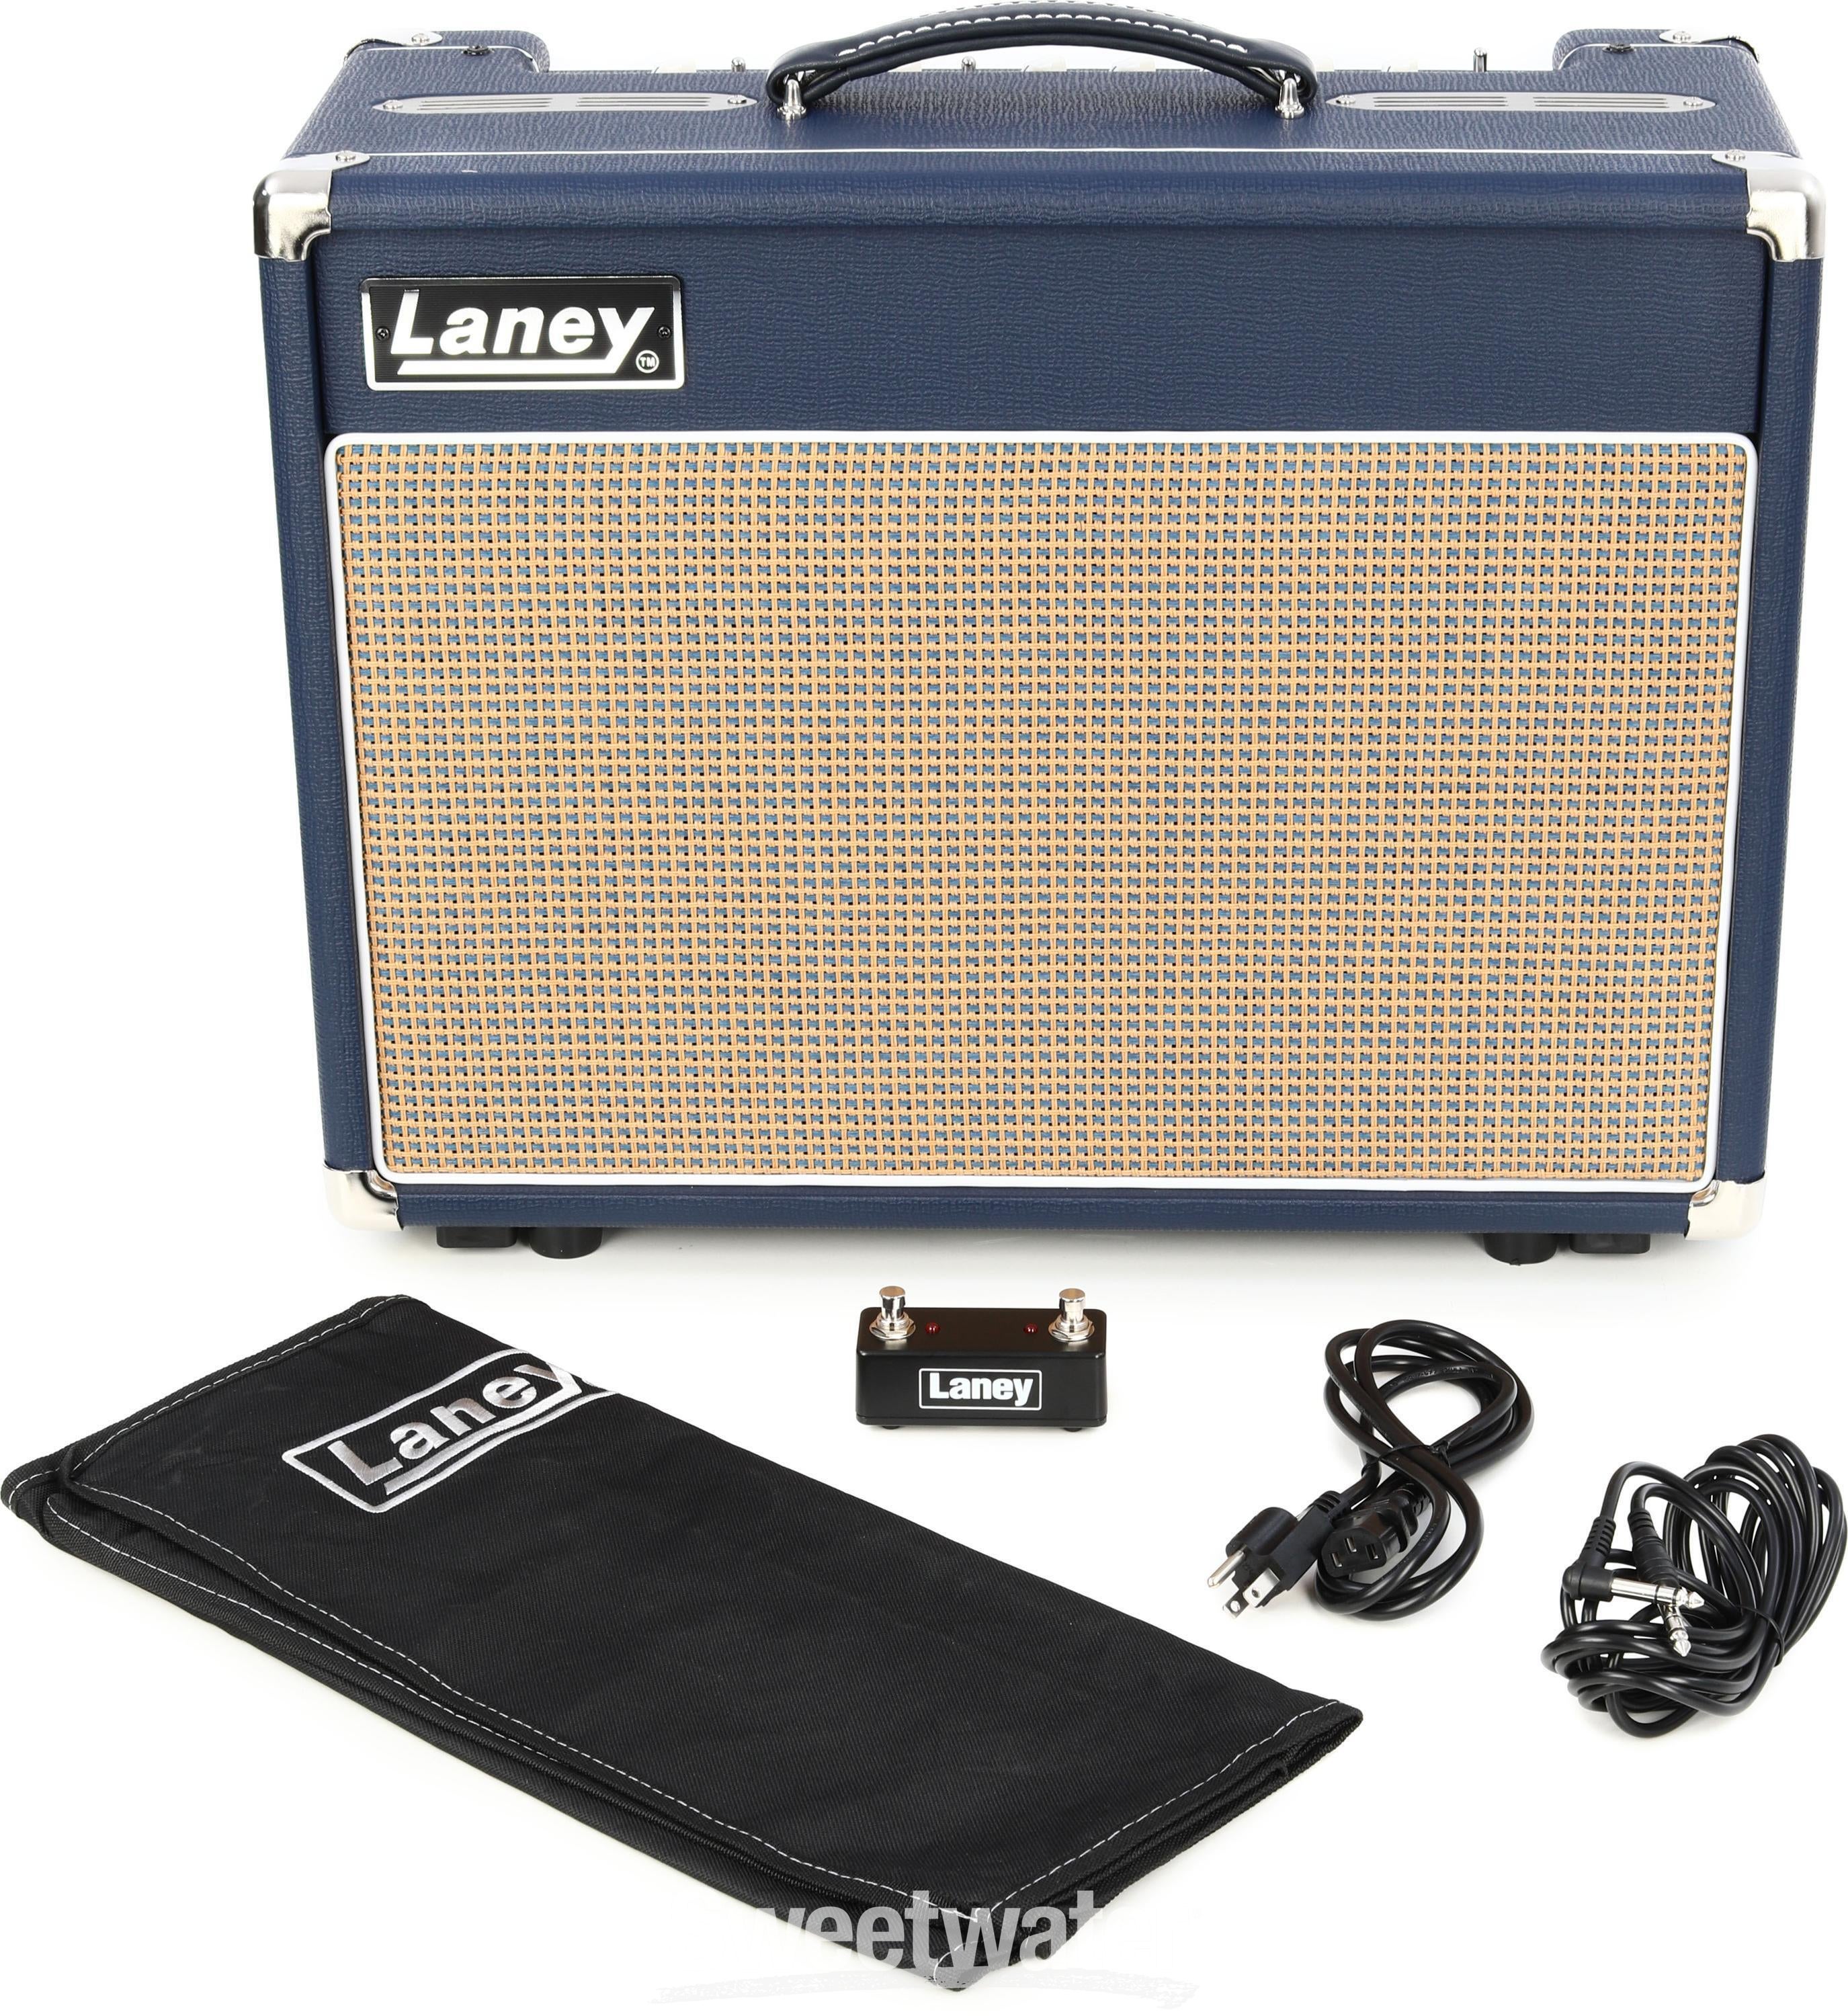 Laney Lionheart L5T-112 5-watt 1 x 12-inch Combo Amplifier